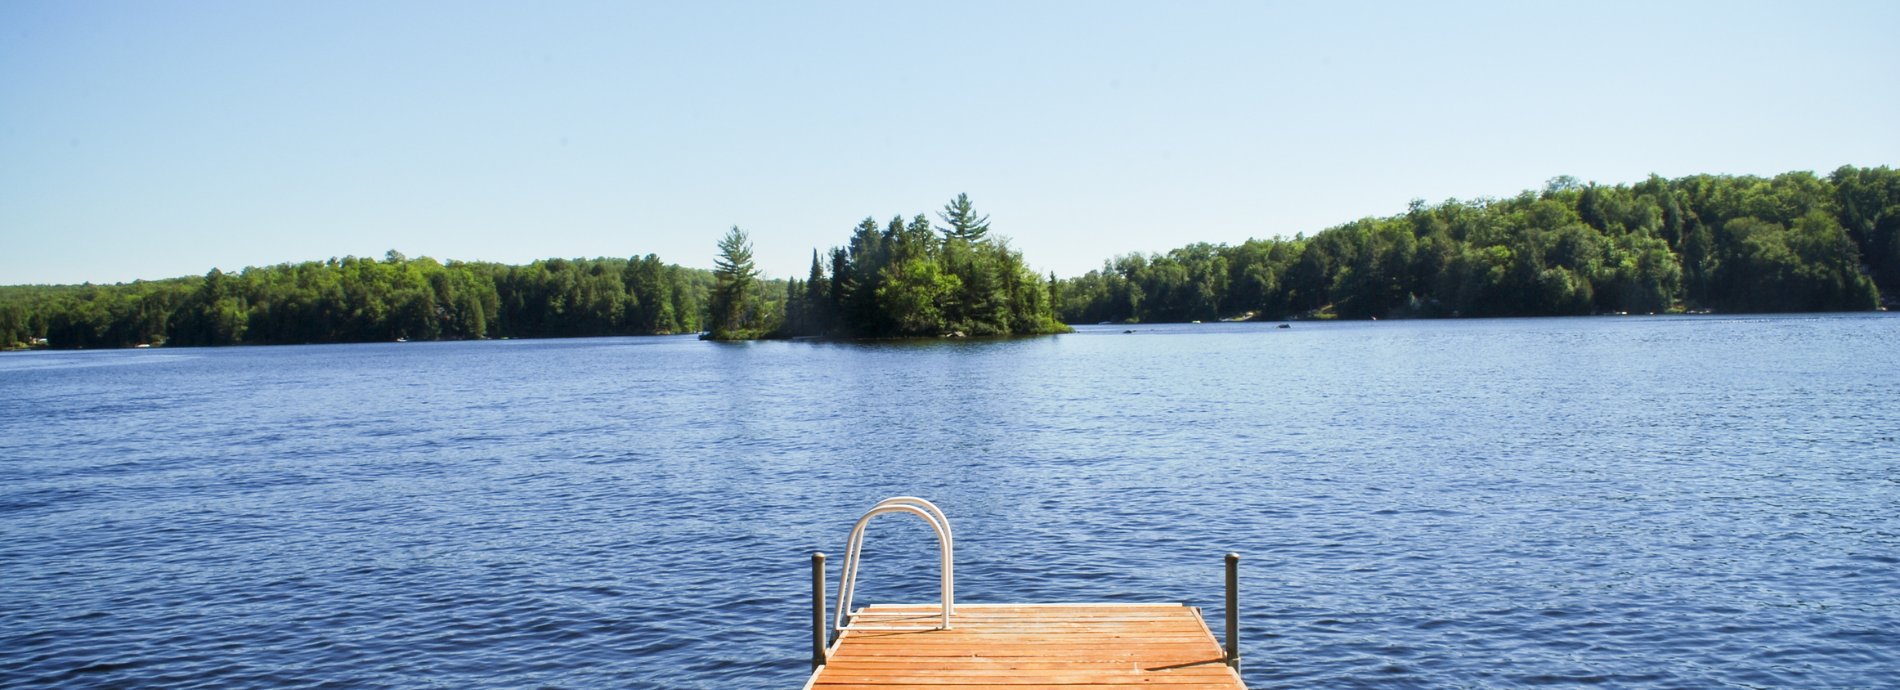 dock extending into a calm lake